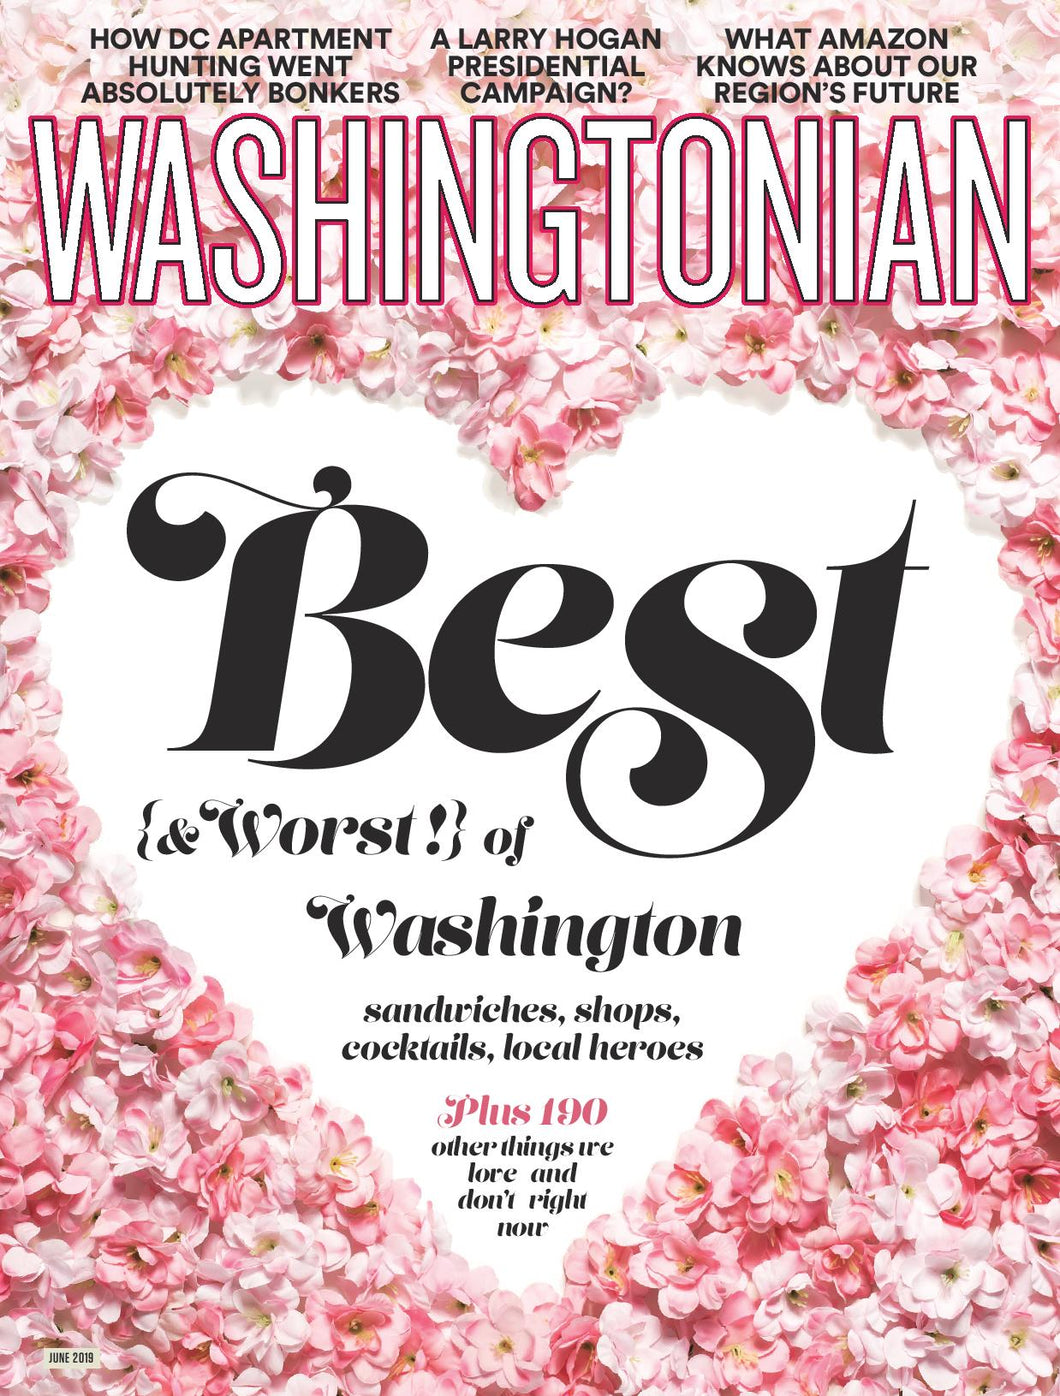 Washingtonian: June 2019 - Best of Washington